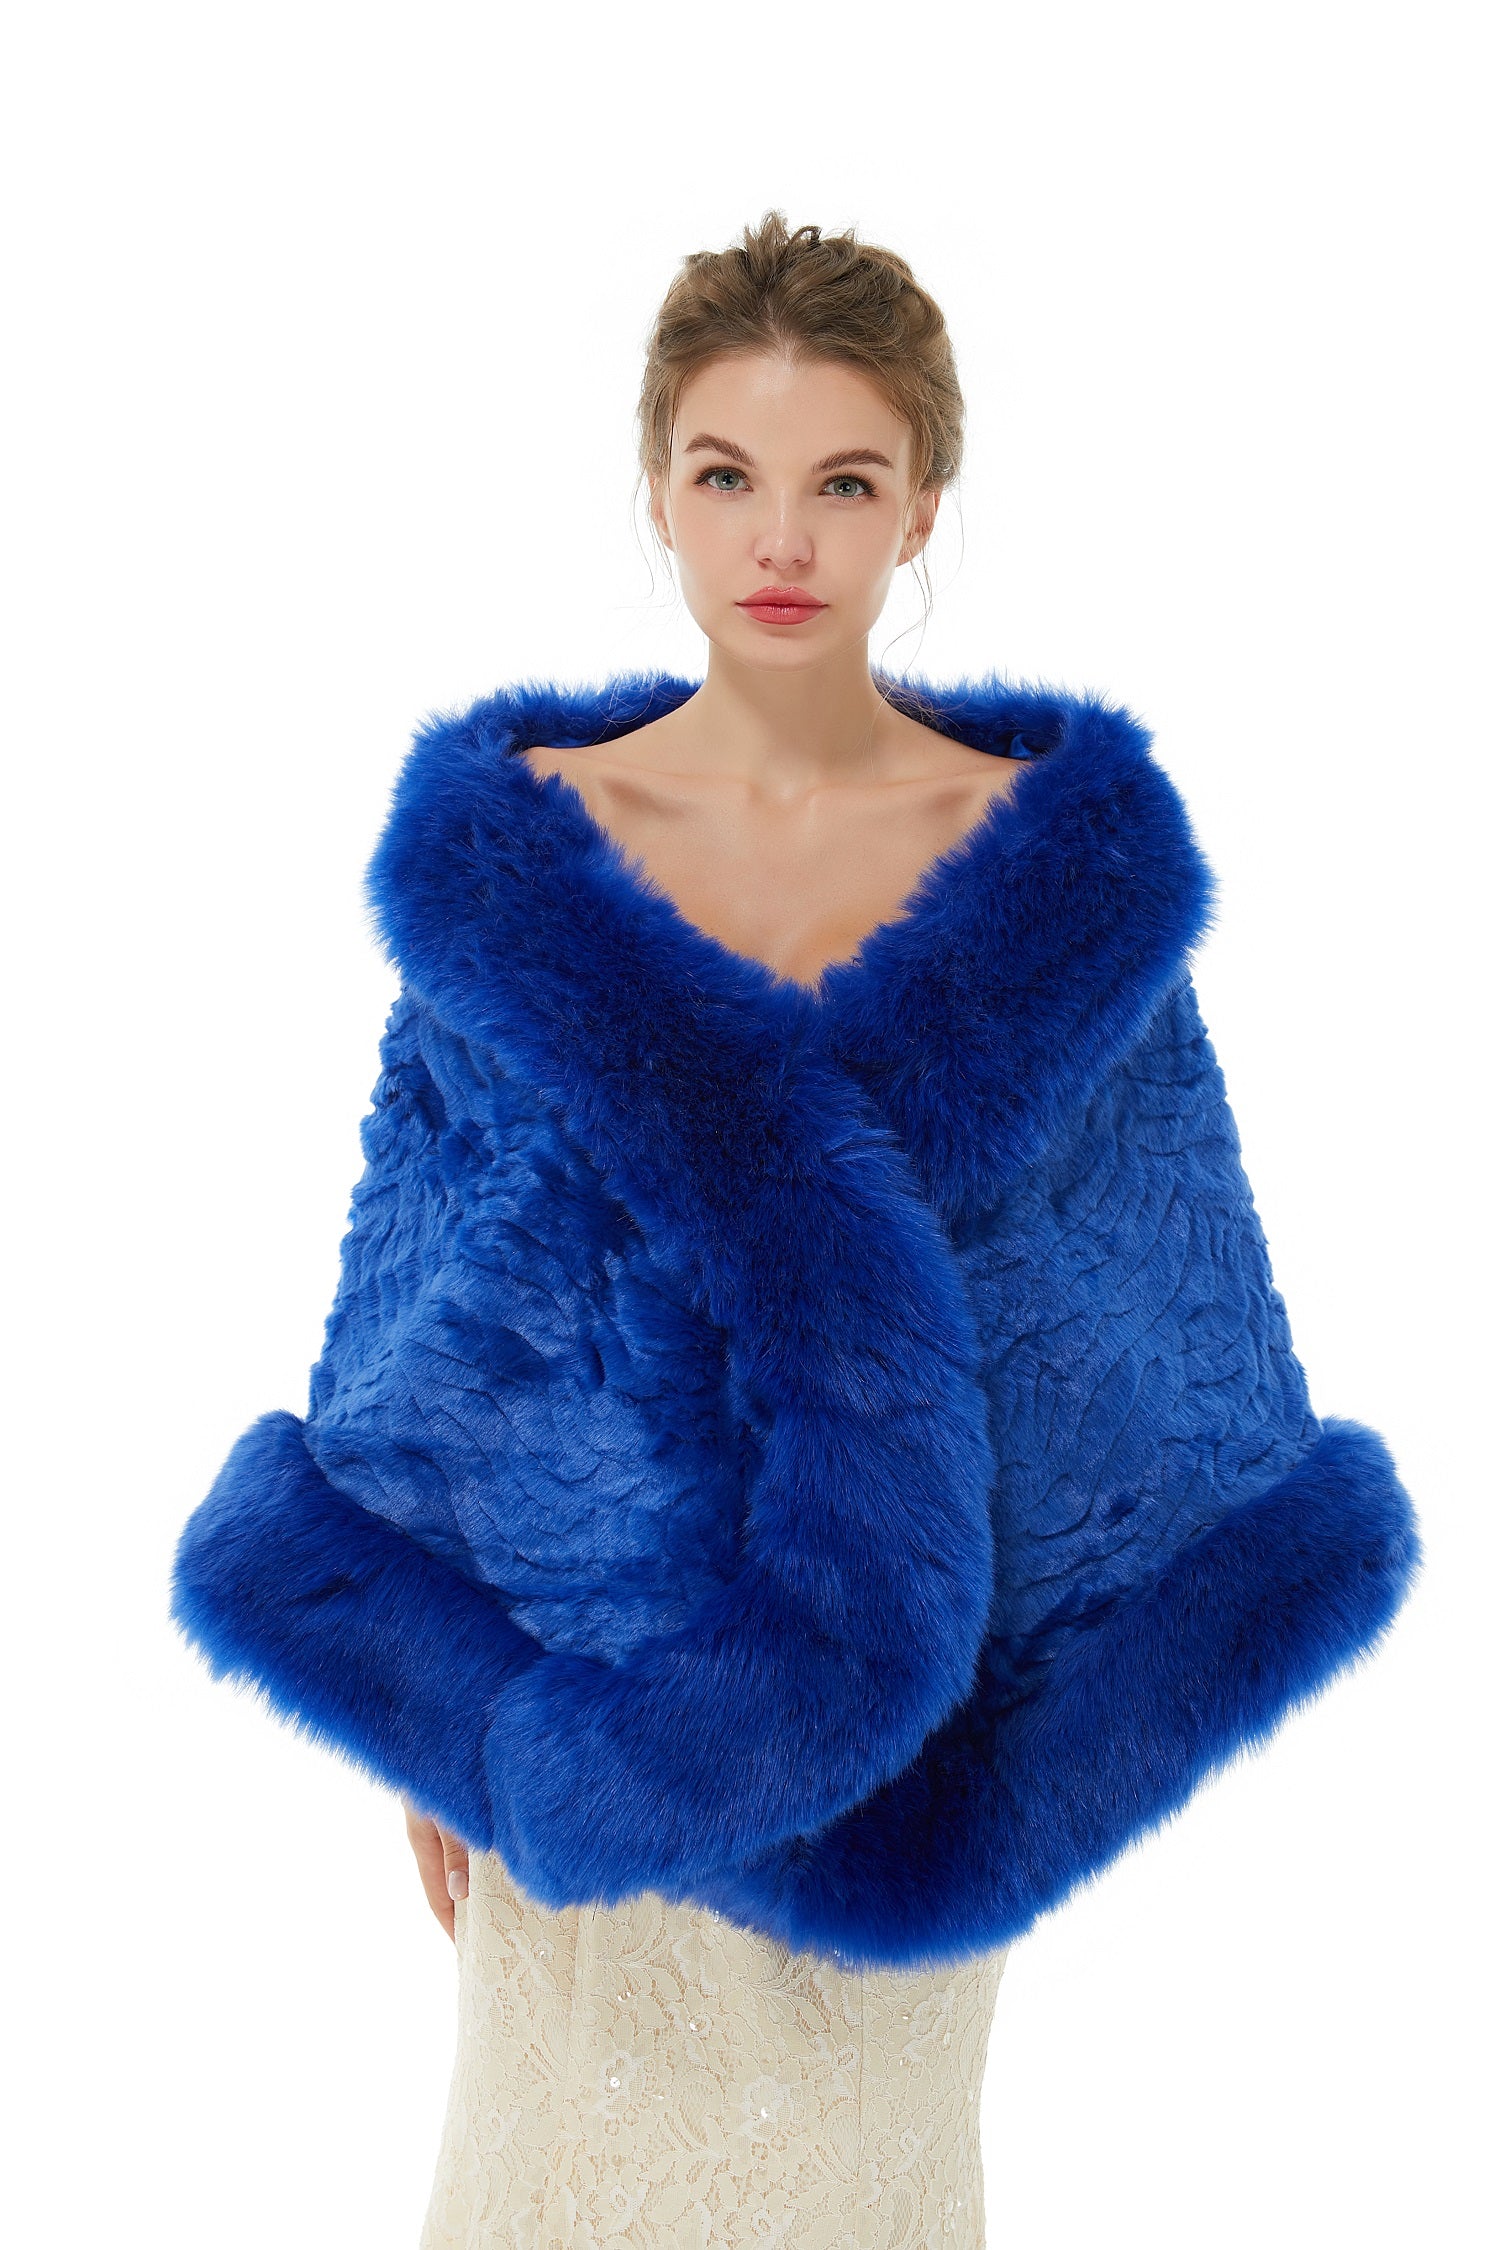 Dresseswow Royal Blue Winter Faux Fur Wedding Wrap